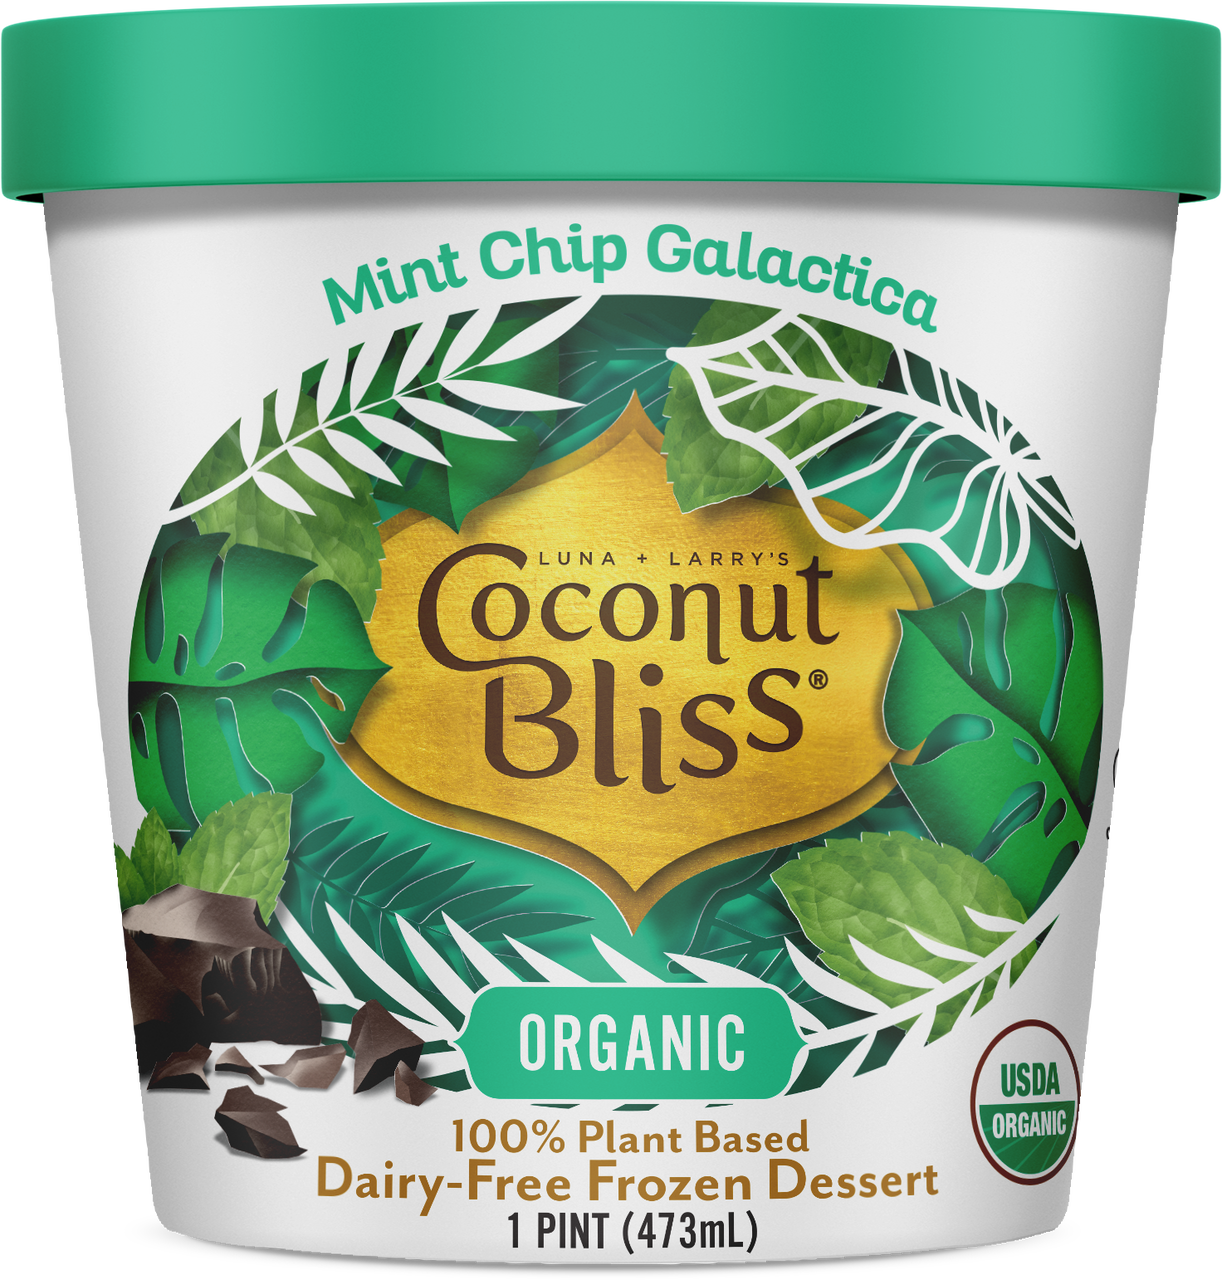 Dessert glaçé biologique (à base végétale sans produits laitiers) - Menthe galactique aux brisures de chocolat - Coconut Bliss